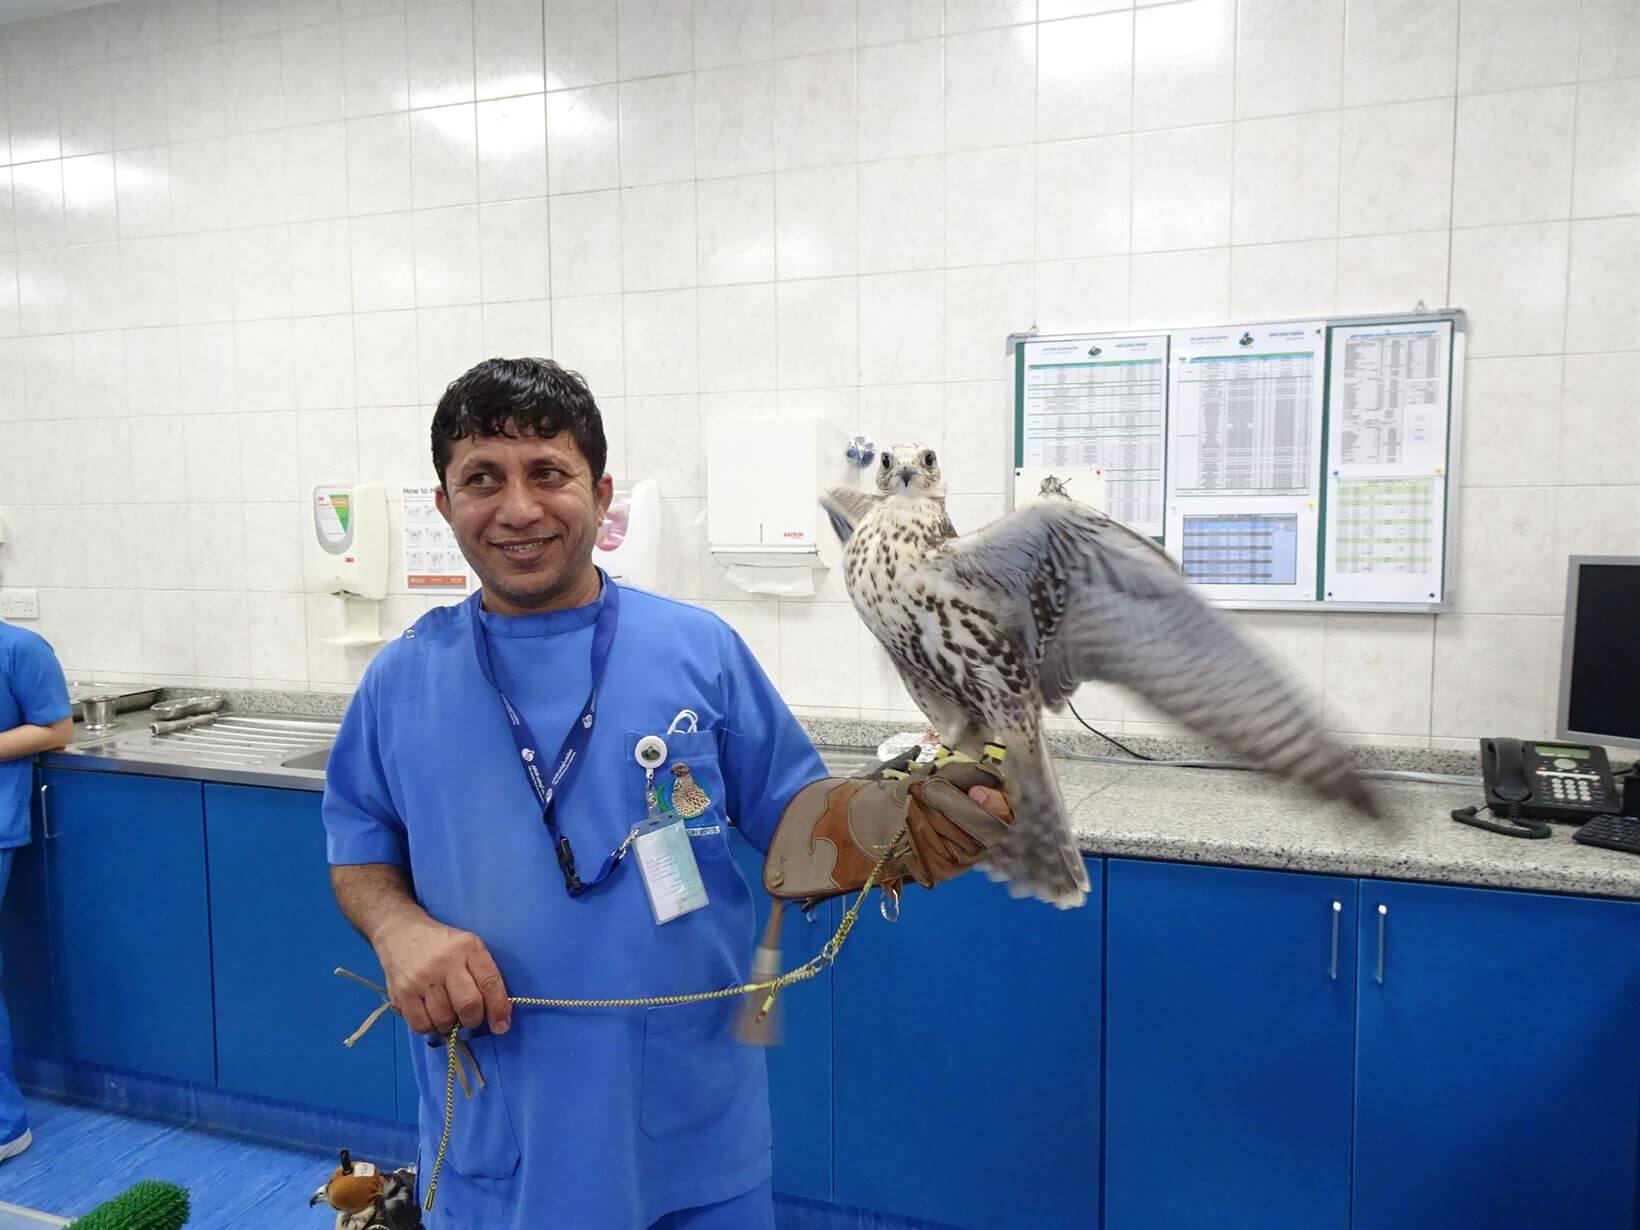 Falcon Hospital Abu Dhabi